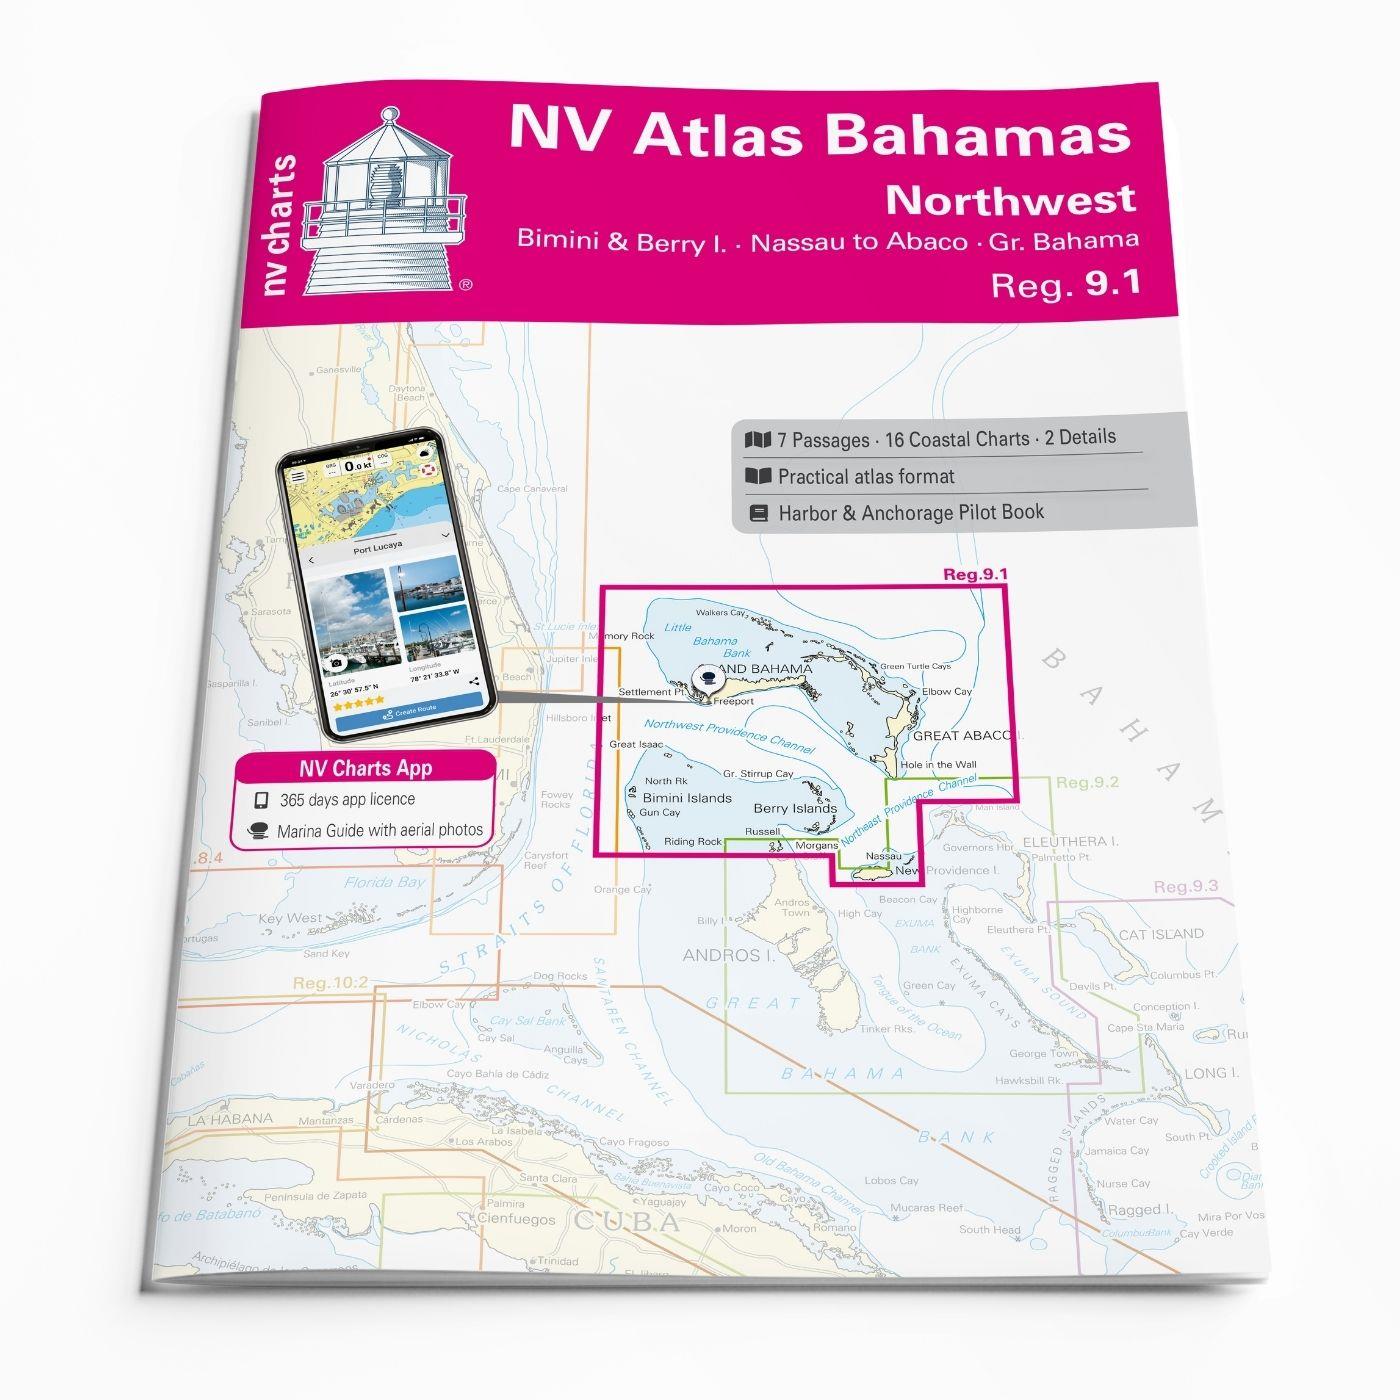 NV Charts Bahamas 9.1 - Northwest - Bimini & Berry Islands - Nassau to Abaco - Grand Bahama